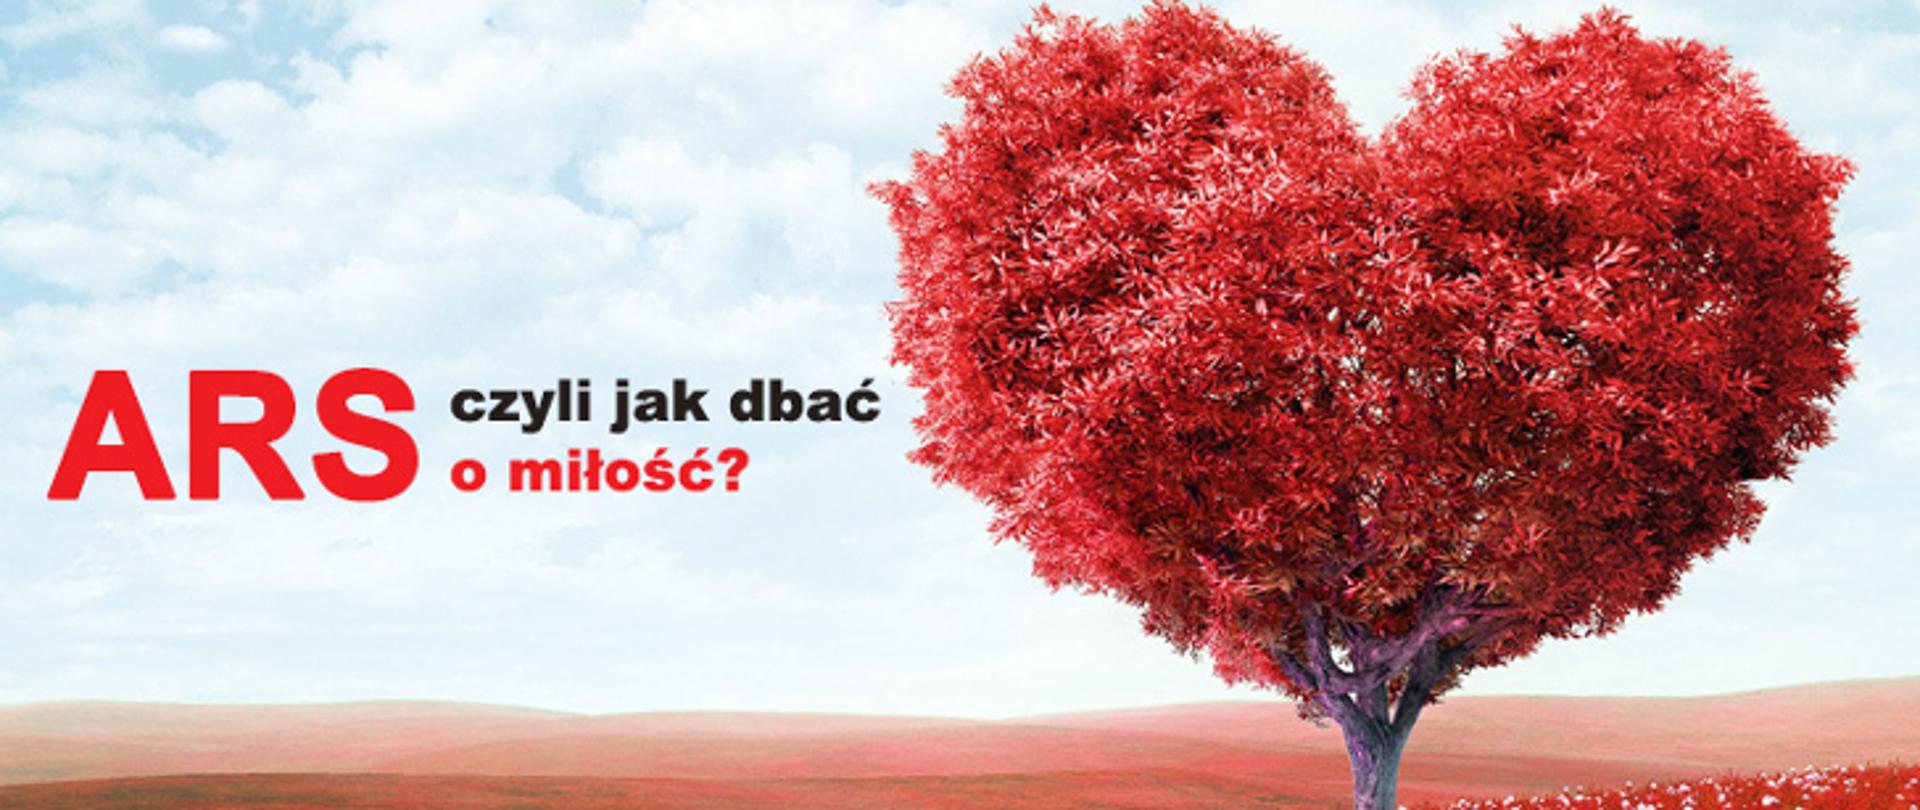 Napis ARS, czyli jak dbać o miłość, obok drzewo z czerwonymi liśćmi ułożonymi w kształcie serca